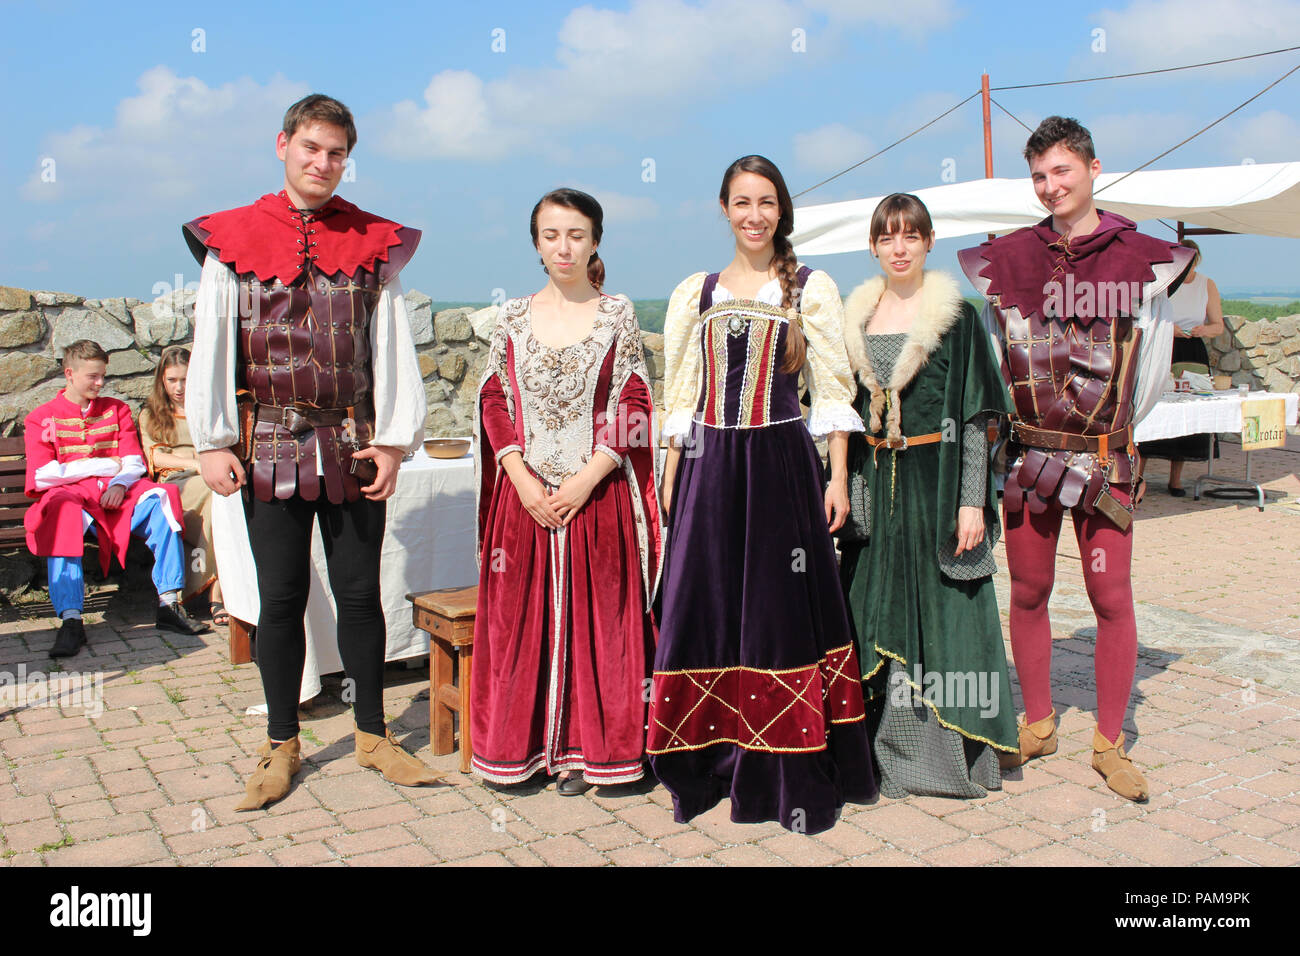 Gruppe von Menschen in historischen Kostümen - Mittelalterliches Fest angezogen Stockfoto